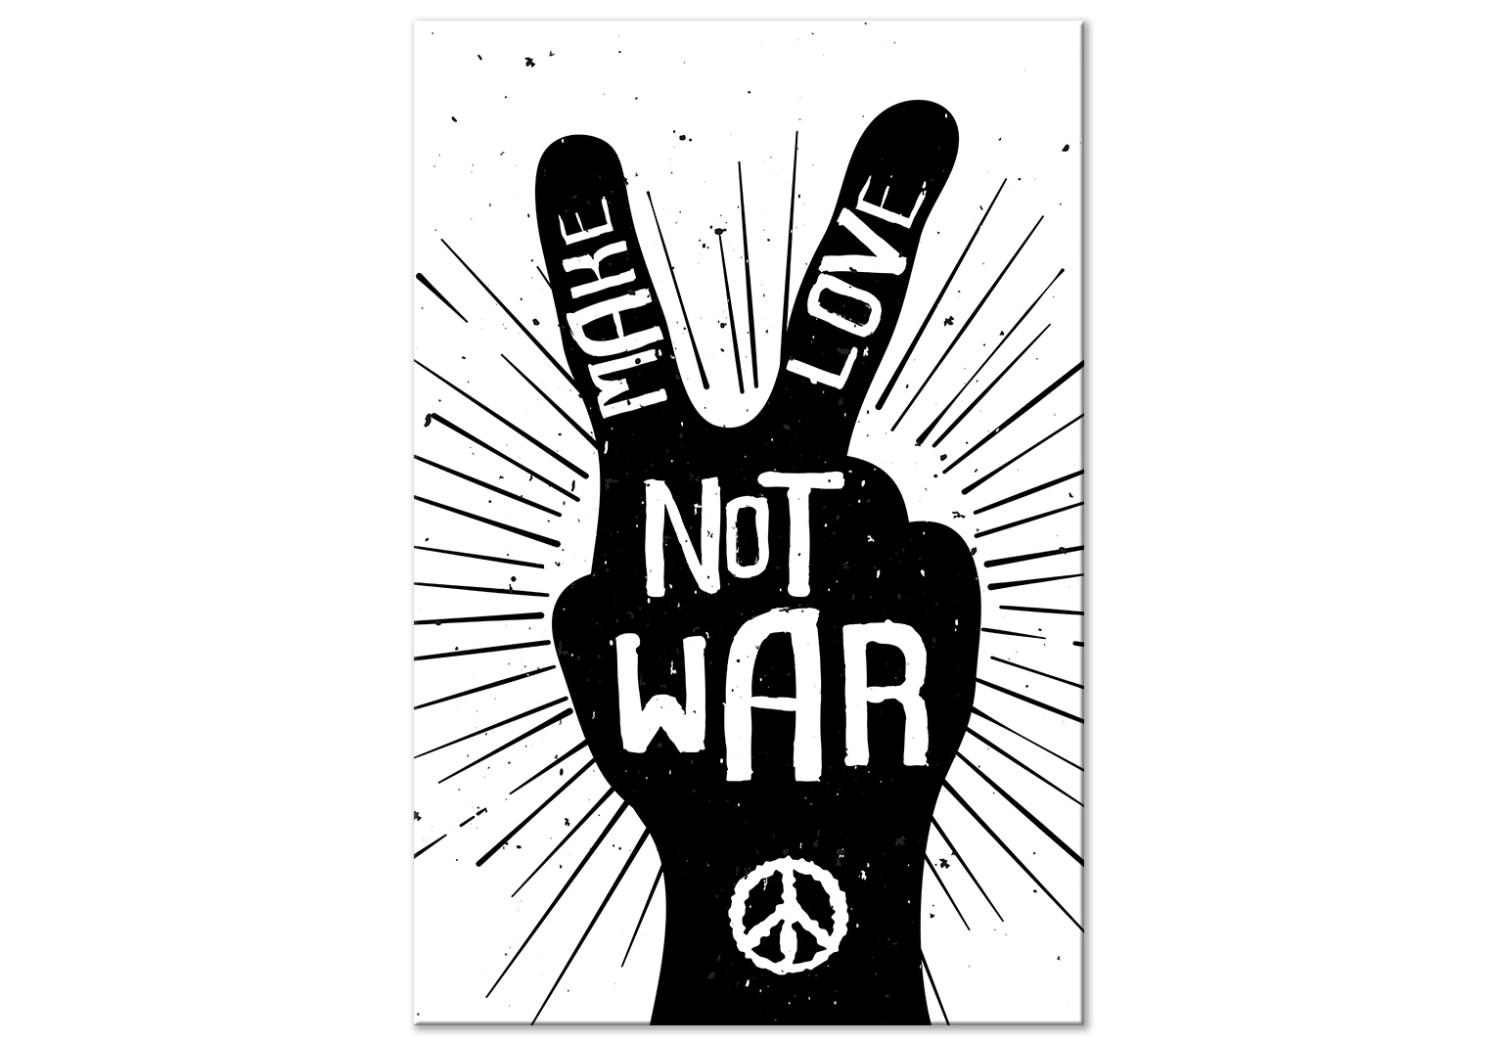 Cuadro moderno No a la guerra (1 parte) - signo en blanco y negro con letras